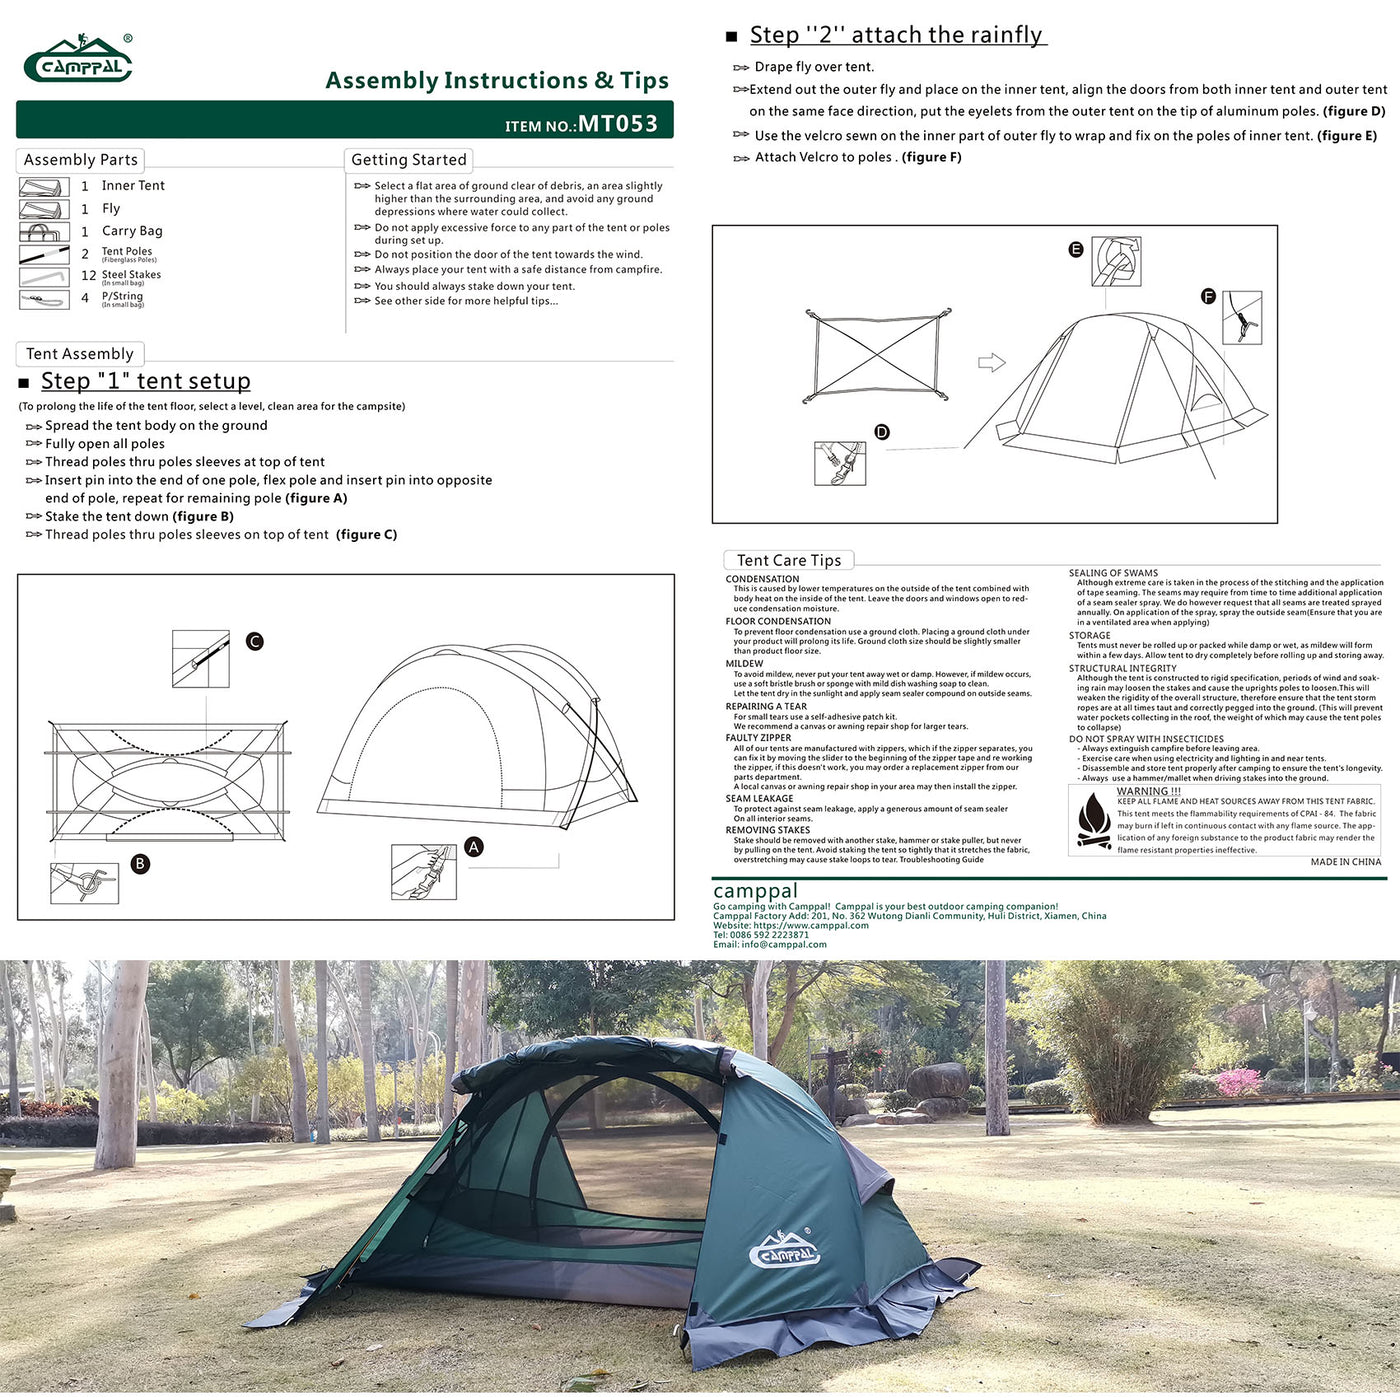 Camppal Professional Ein-Personen-4-Jahreszeiten-Leicht-Rucksackzelt mit Wasser-/Regen-/Wind-/Sturm-/Schneefestigkeit, ideal für Solo-Camping, Wandern, Trekking